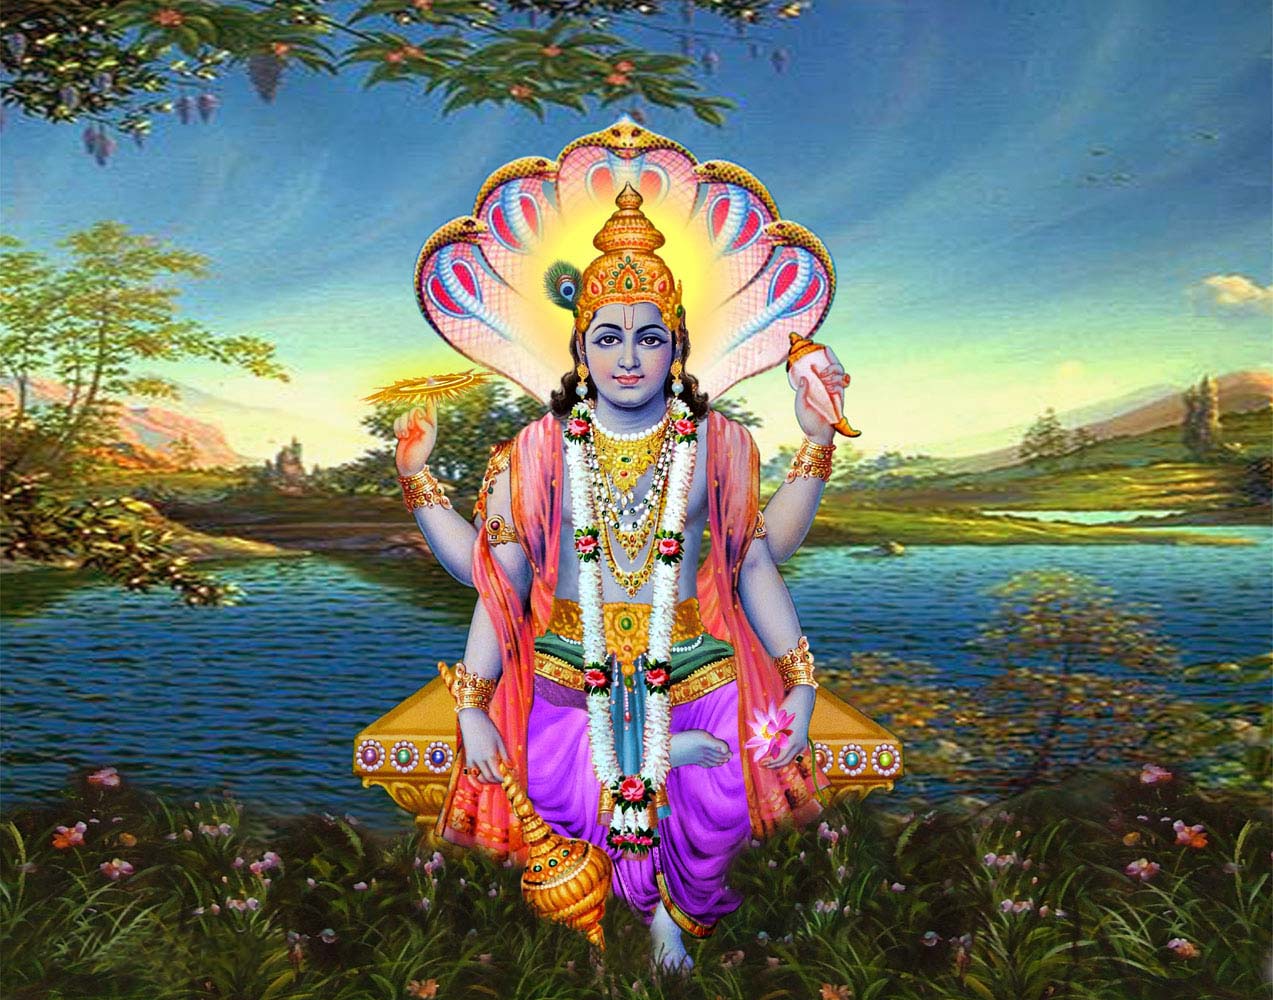 Posts Lord Siva Image Brahma Vishnu Mahesh Wallpaper